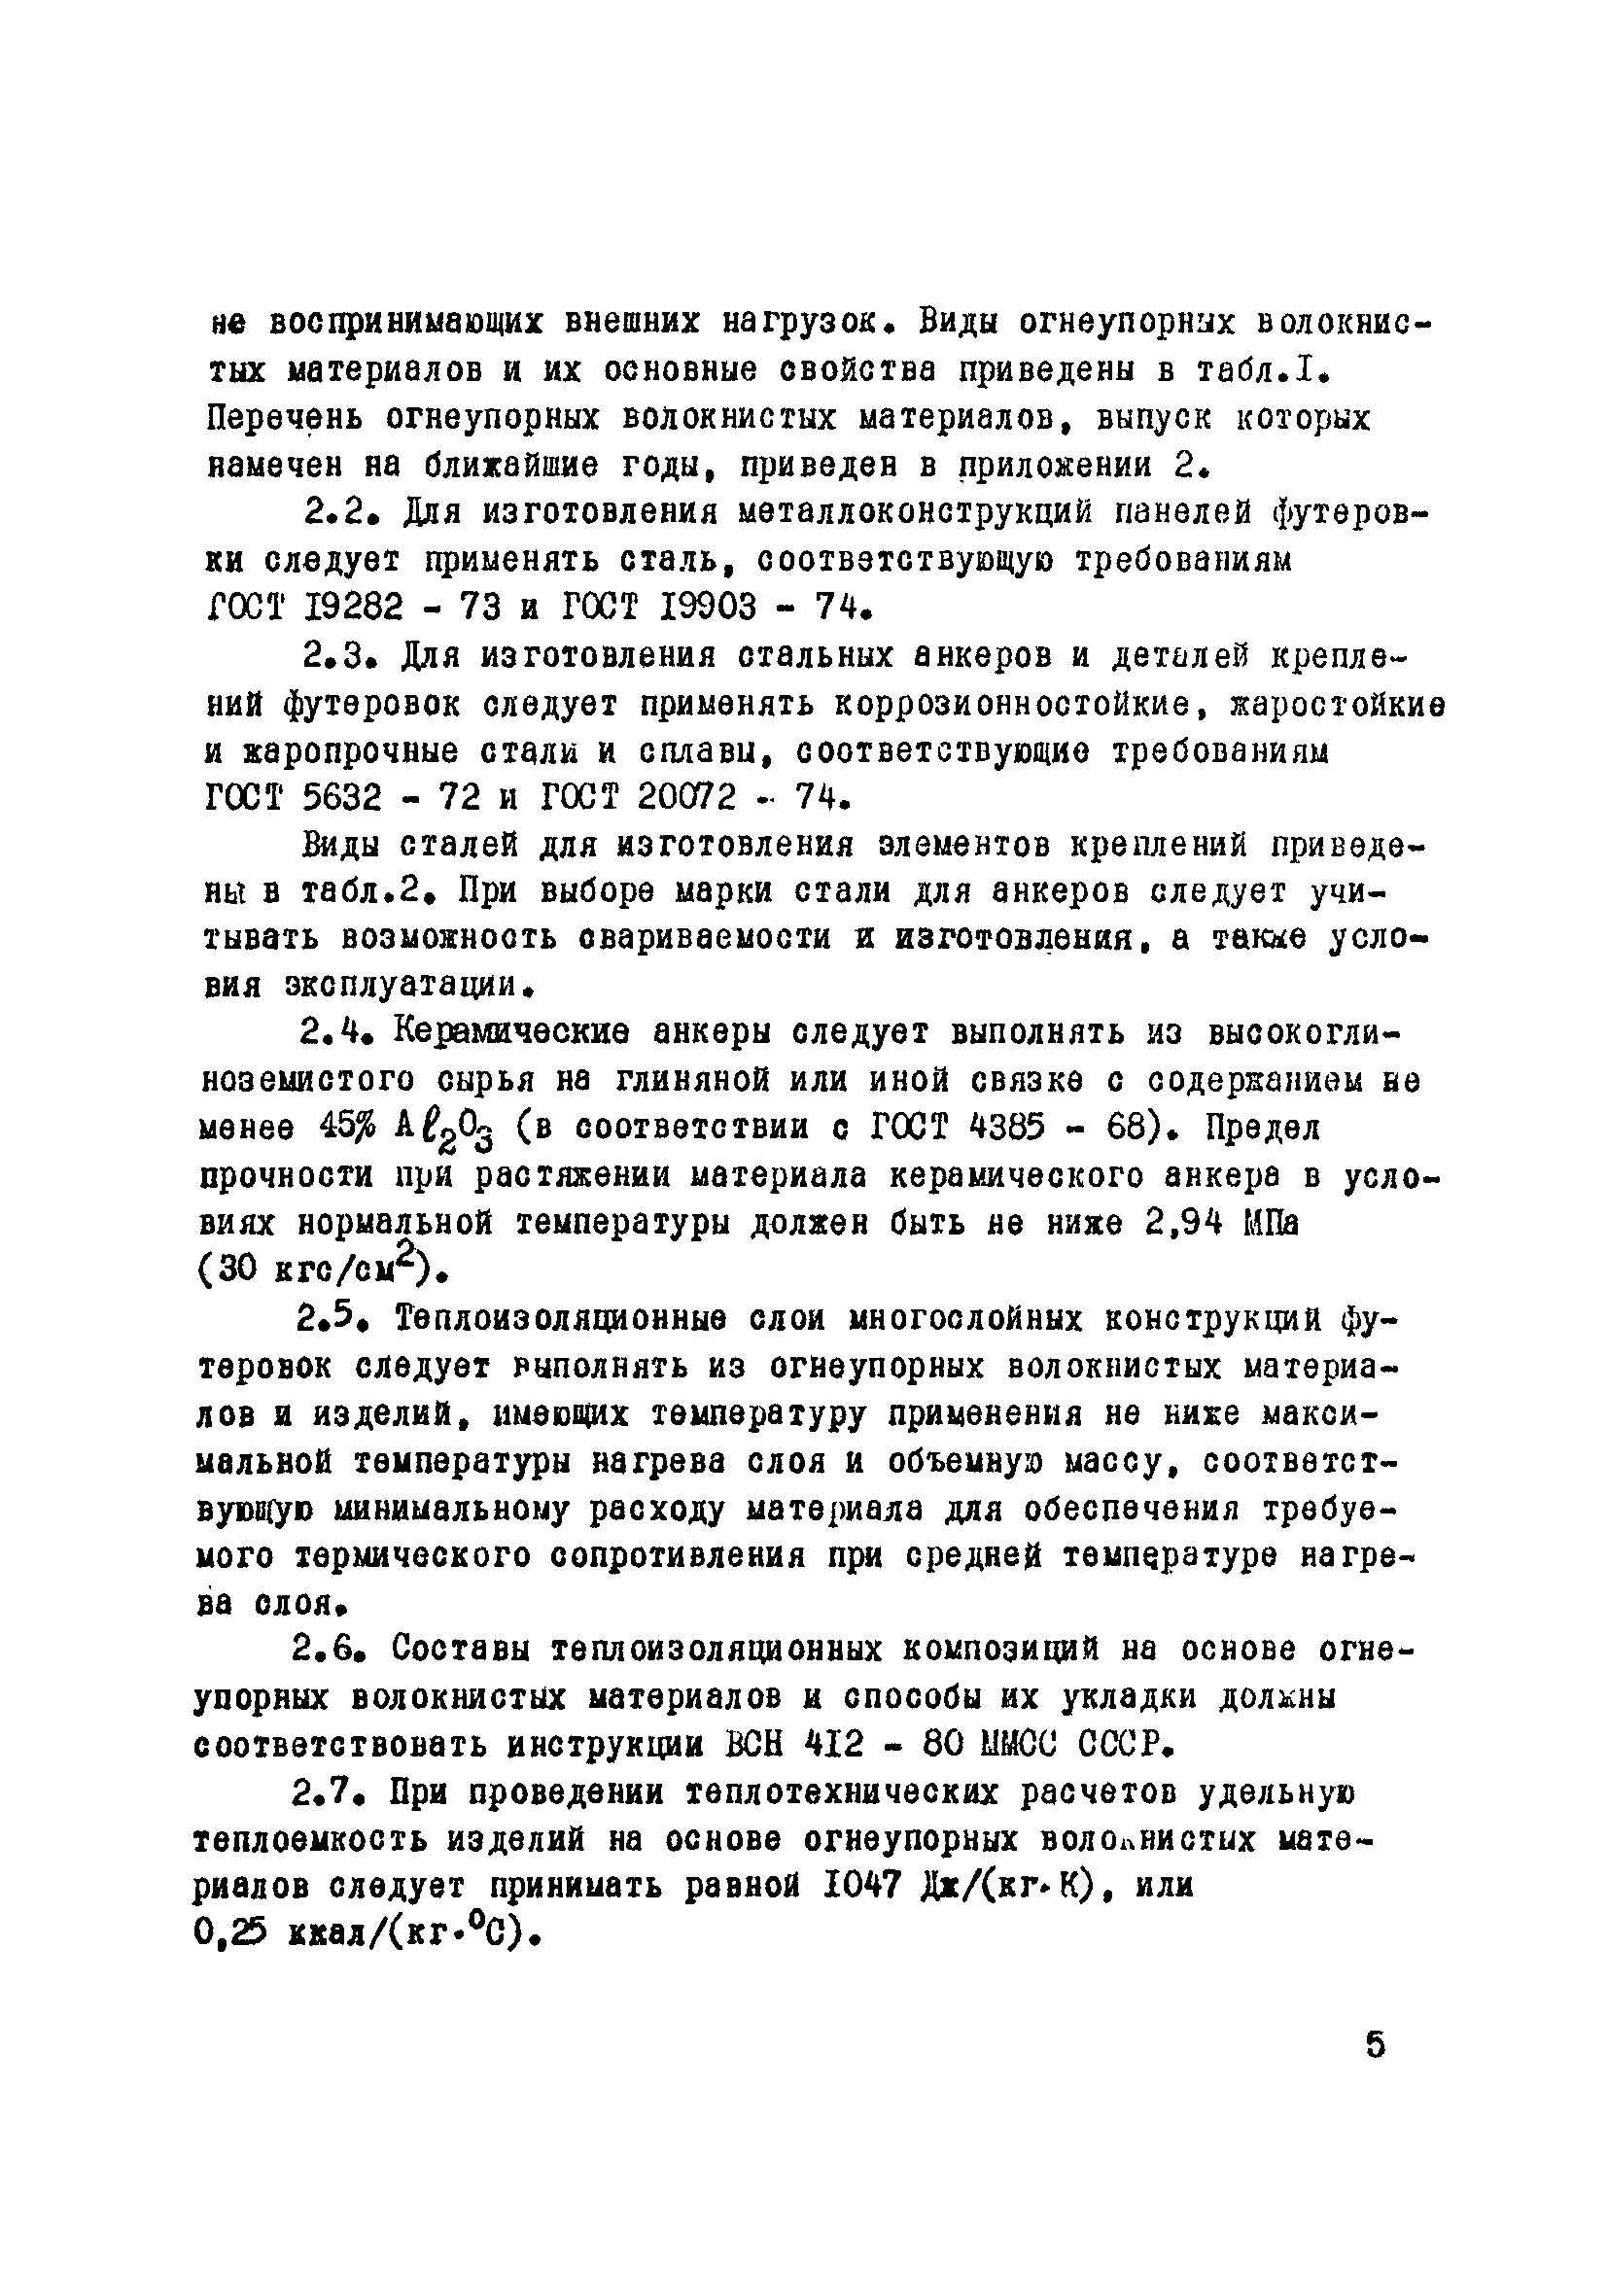 ВСН 429-81/ММСС СССР